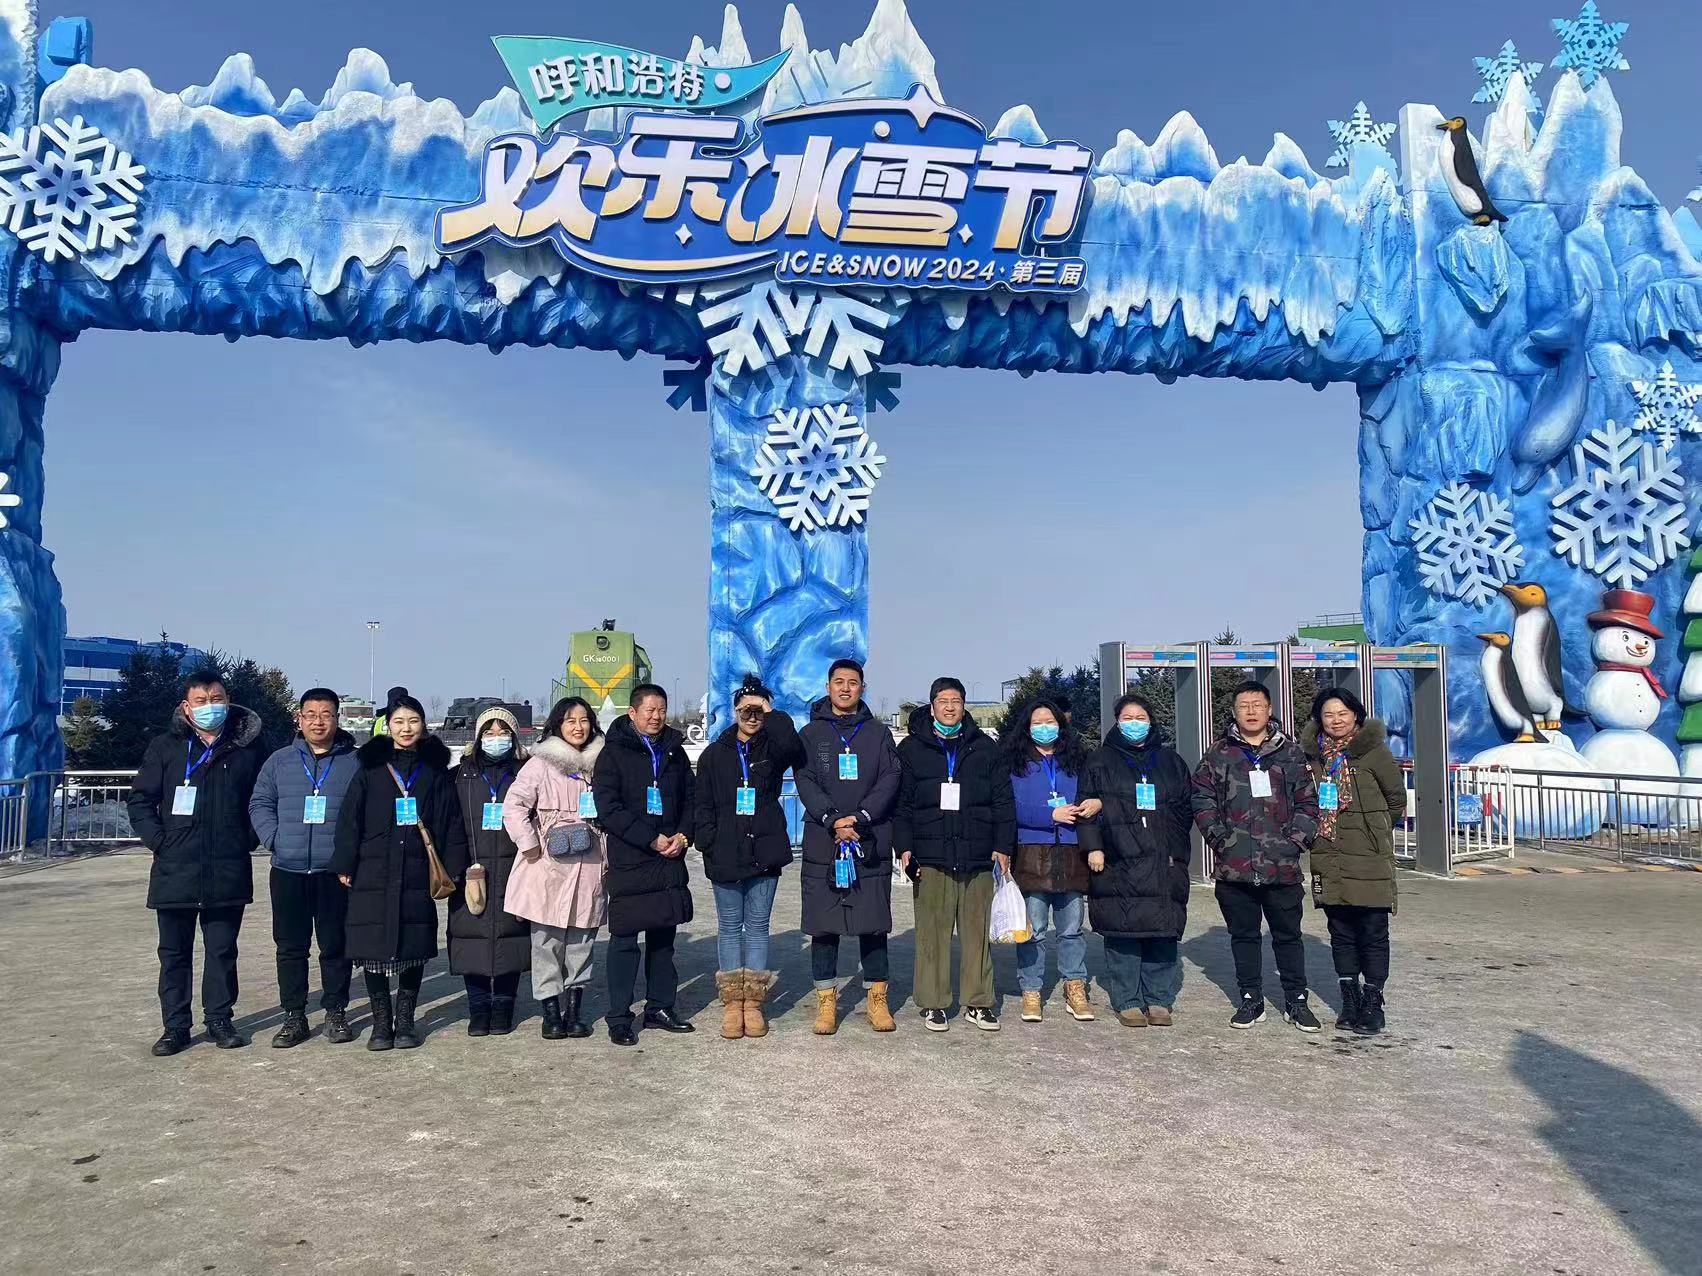 集团参加第三届呼和浩特欢乐冰雪节趣味运动会喜获佳绩图2.jpg